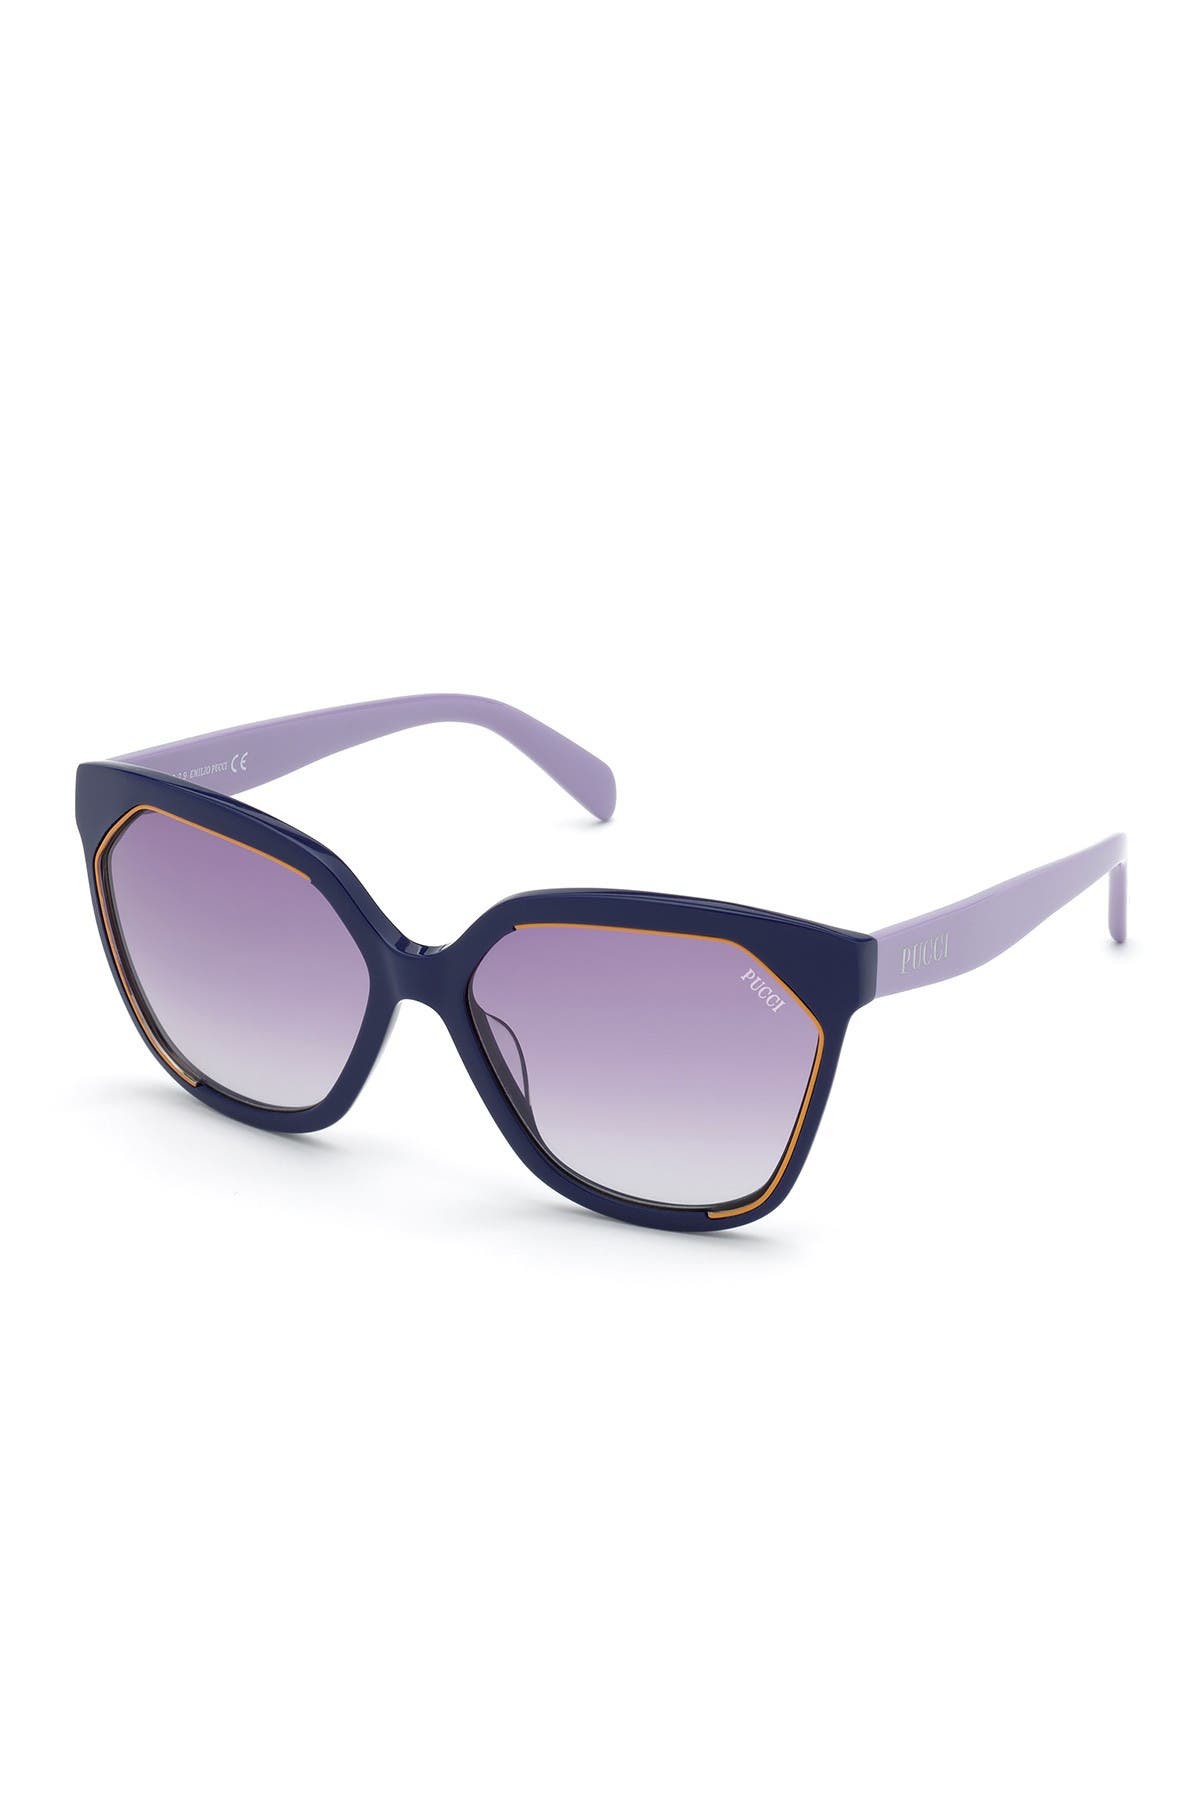 Emilio Pucci 59mm Geometric Sunglasses In Bluo/blug